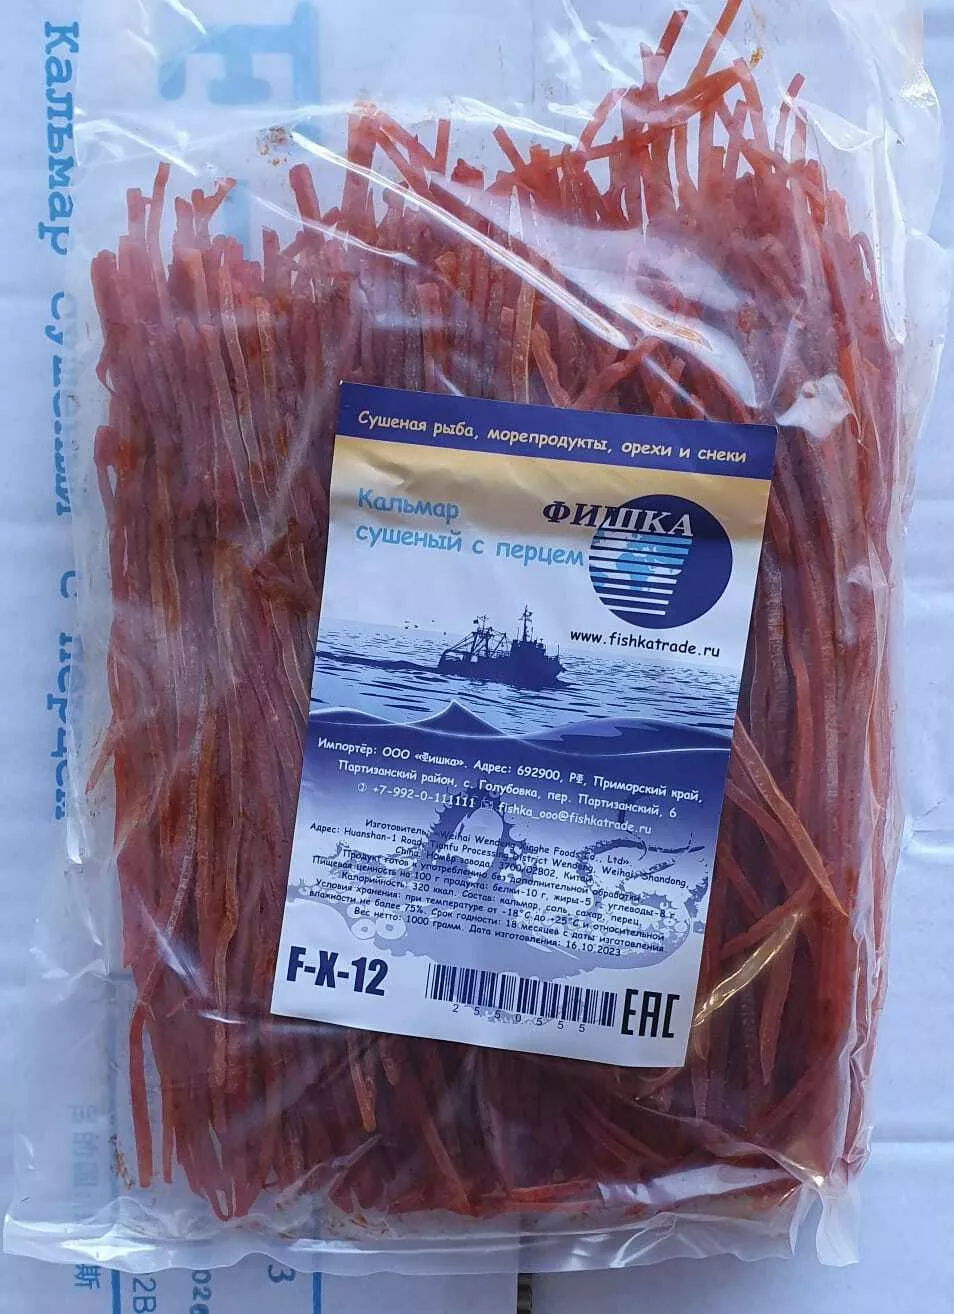 кальмар со вкусом краба (мясо-стружка)  в Владивостоке 3